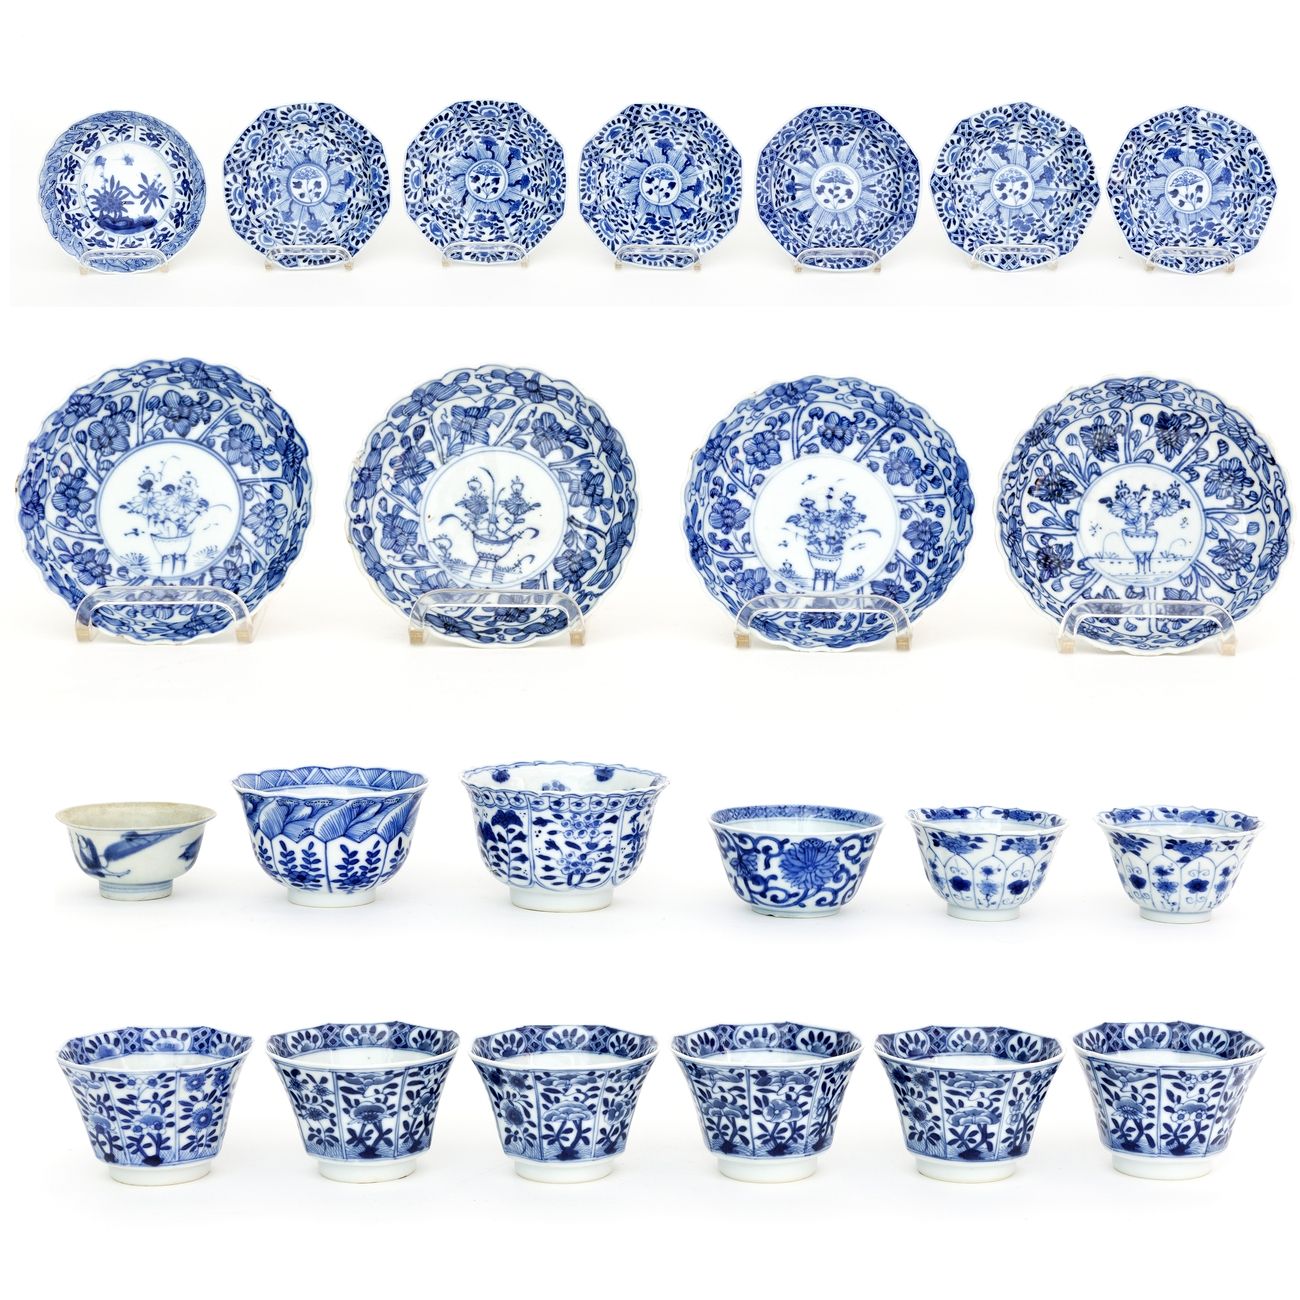 中国，18世纪拍品包括12个瓷壶和11个碟子，上面有蓝白珐琅的花卉装饰 